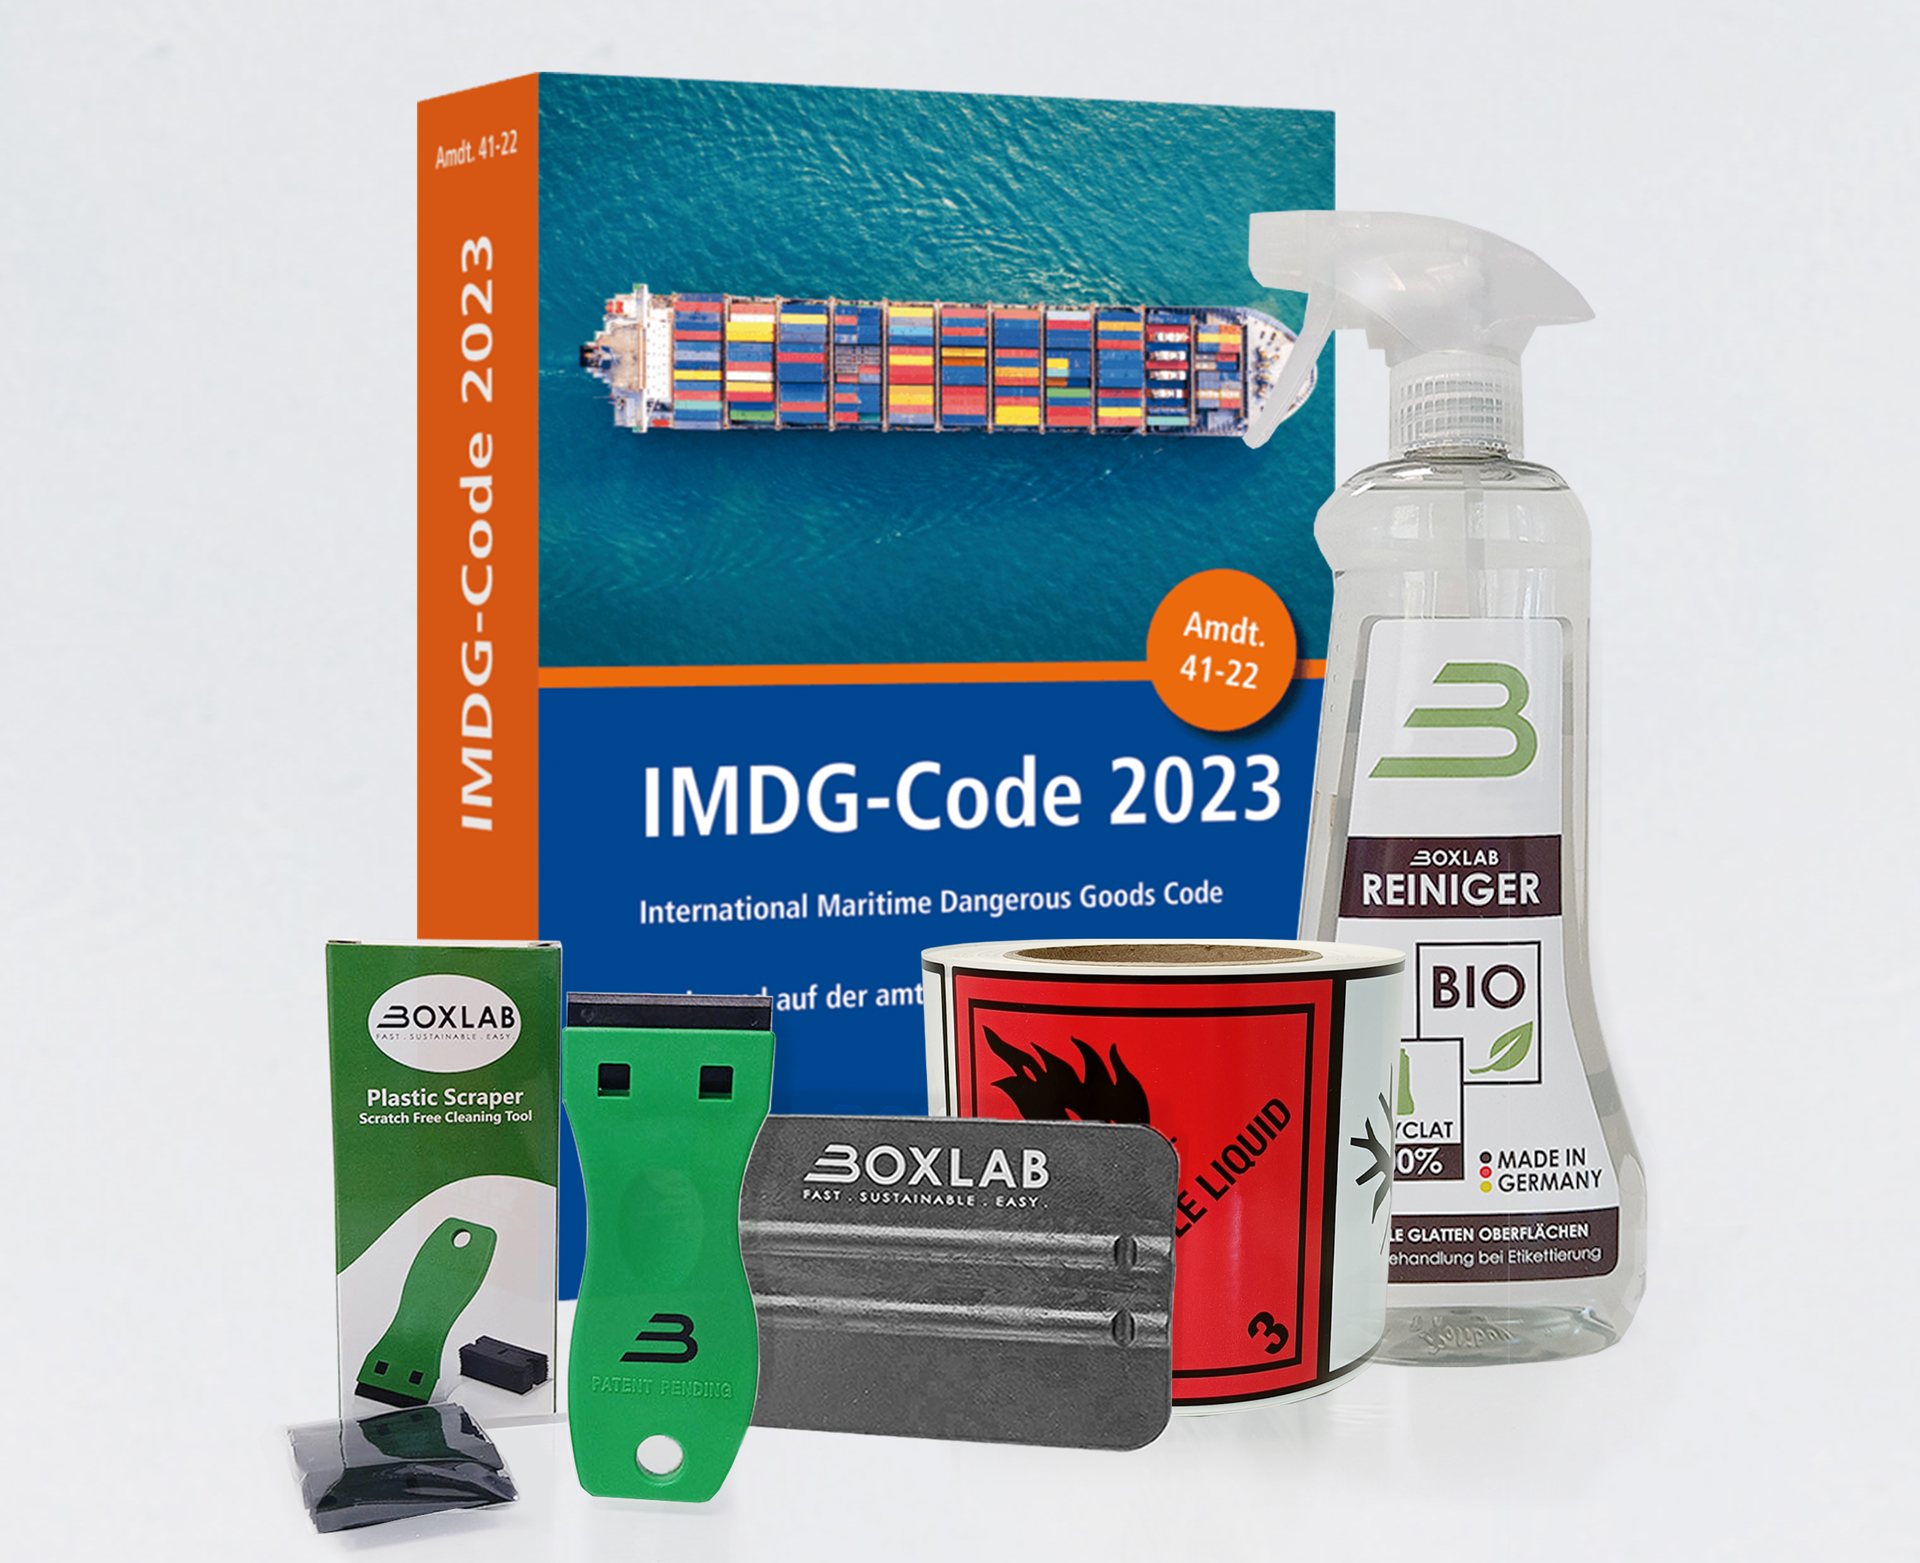 IMDG-Code 2023 Starter Kit - Hazard Label